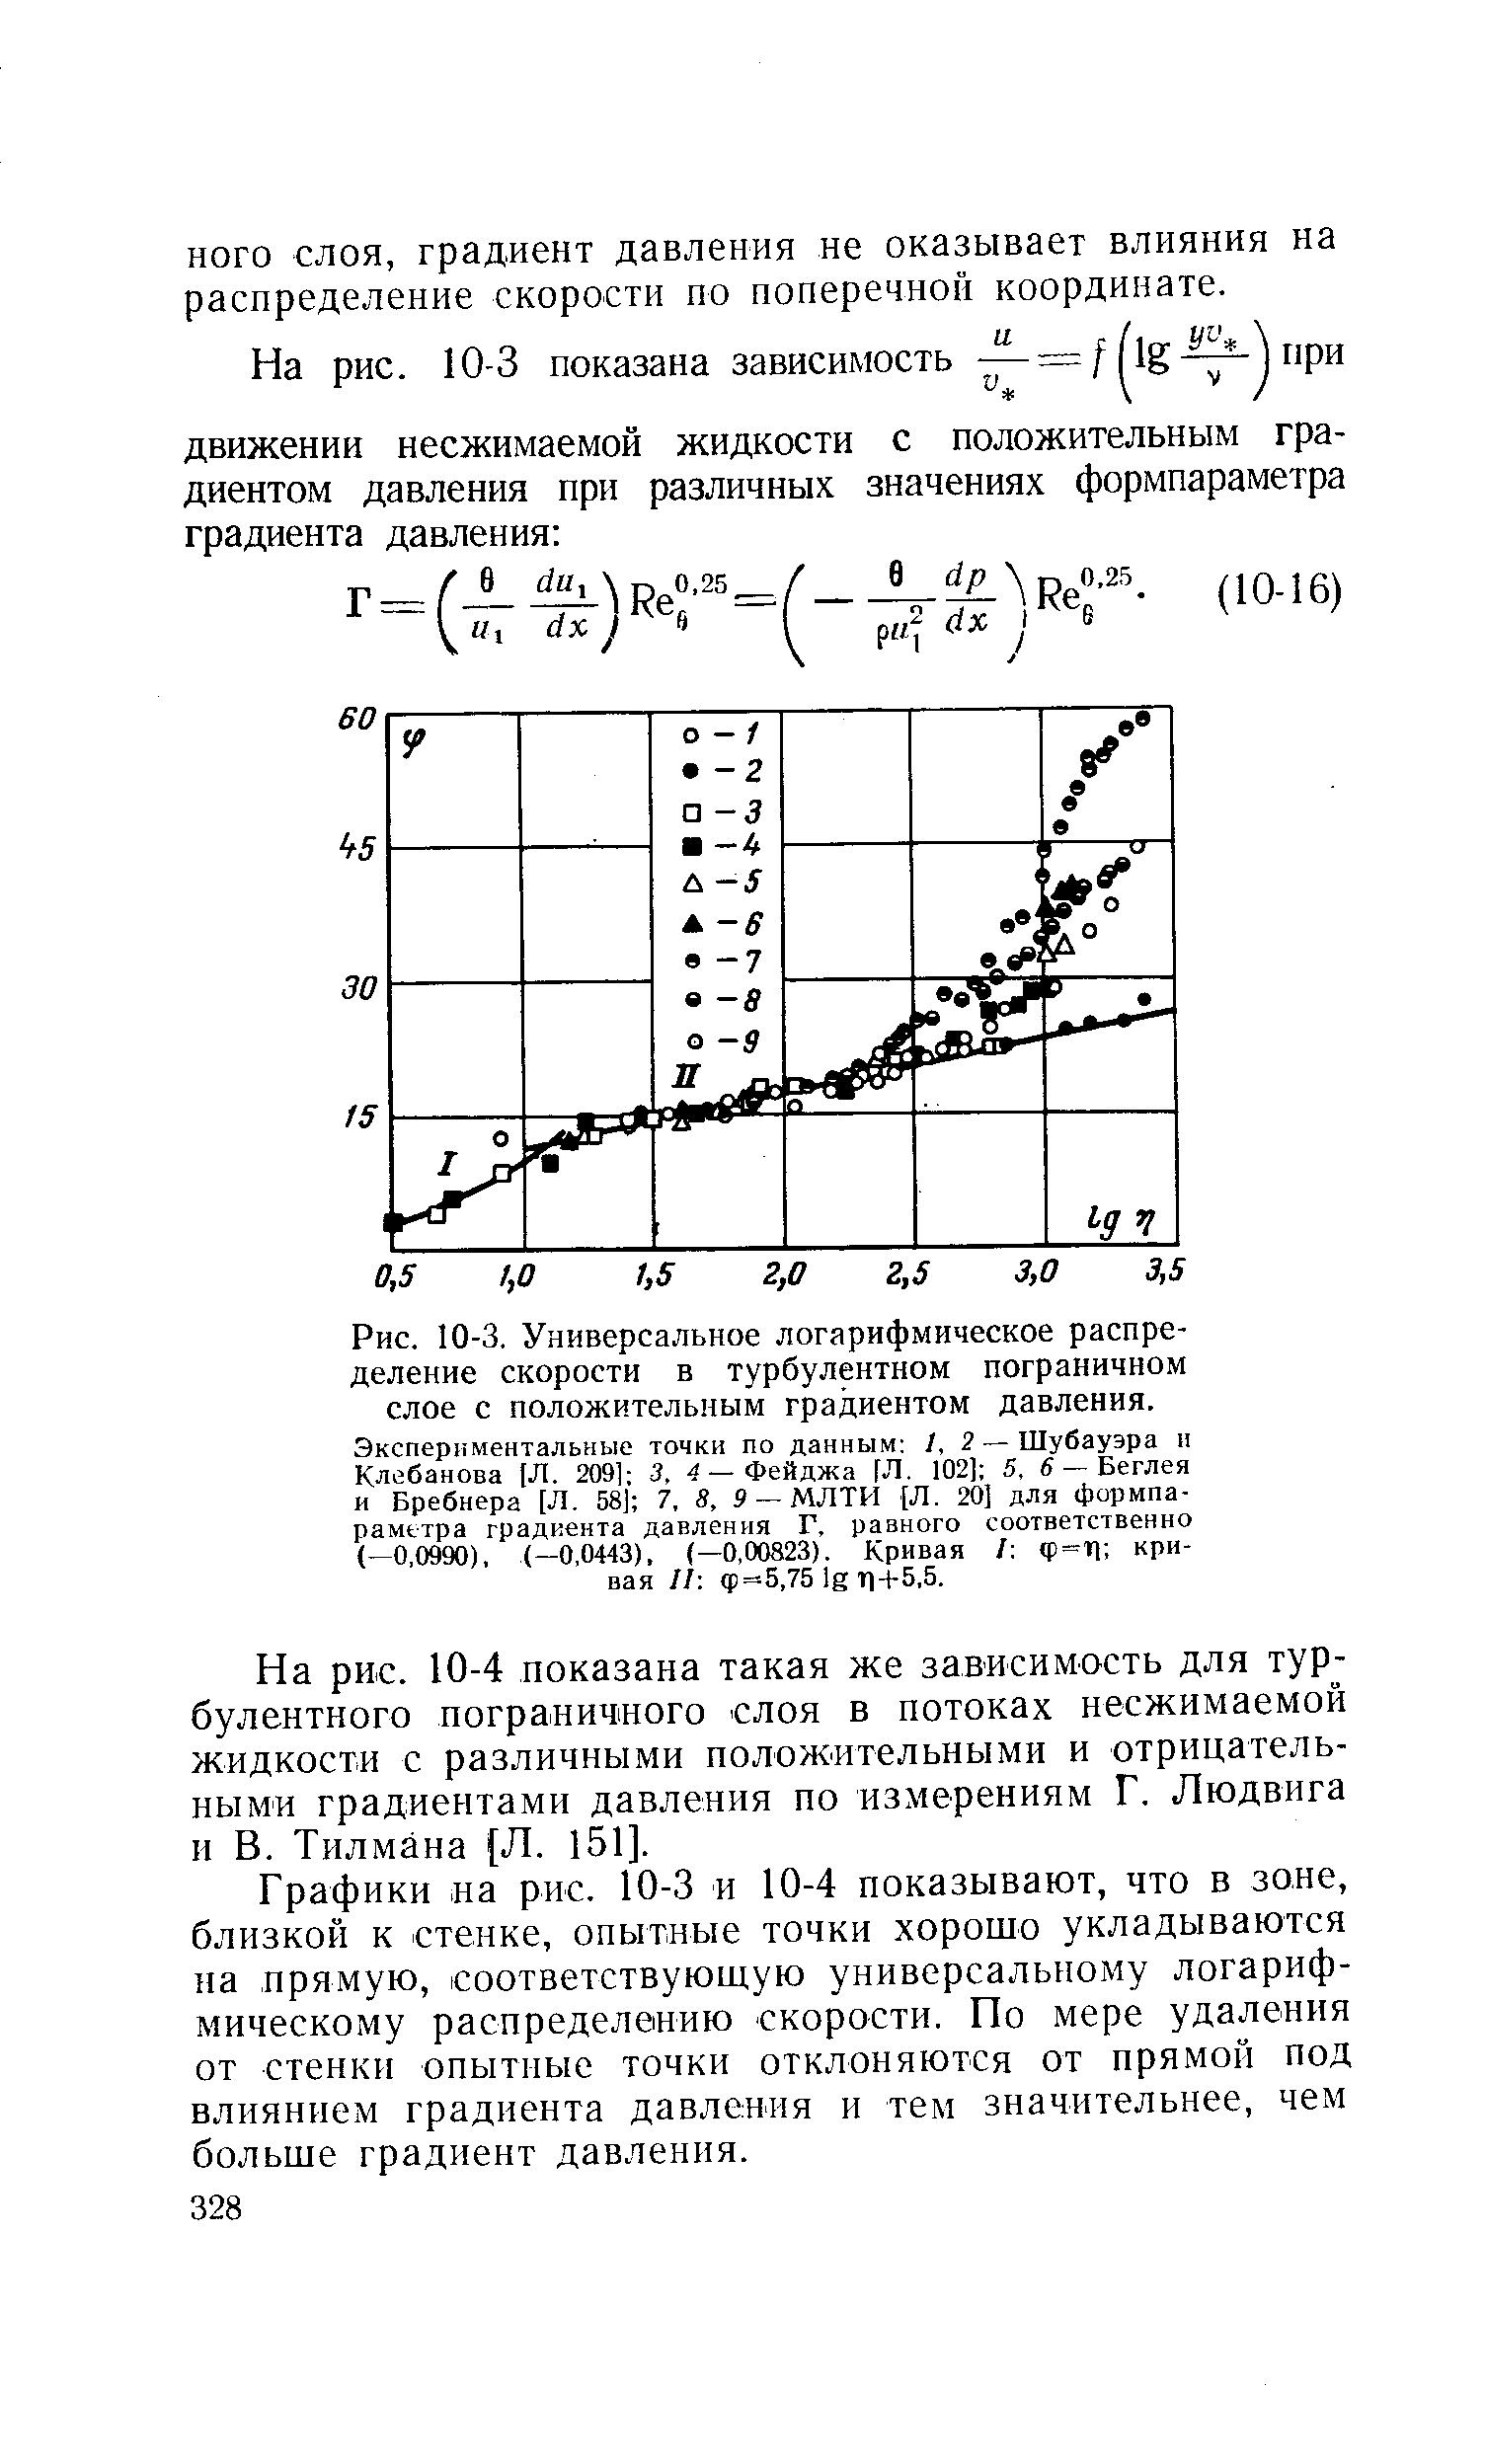 Рис. 10-3, Универсальное <a href="/info/202022">логарифмическое распределение скорости</a> в <a href="/info/19796">турбулентном пограничном слое</a> с <a href="/info/203935">положительным градиентом давления</a>. Экспериментальные точки по данным 1,2— Шубауэра н Клебанова (Л. 209] 3, 4 — Фейджа [Л. 102] 5, в — Беглея и Бребнера [Л. 58] 7, В, 9 — МЛТИ [Л, 20] для формпараметра <a href="/info/410">градиента давления</a> Г, равного соответственно (—0,0990), (-0,0443), (—0,00823). Кривая / ф=П кривая II ф=5,75 lg Т1- -5,5.
